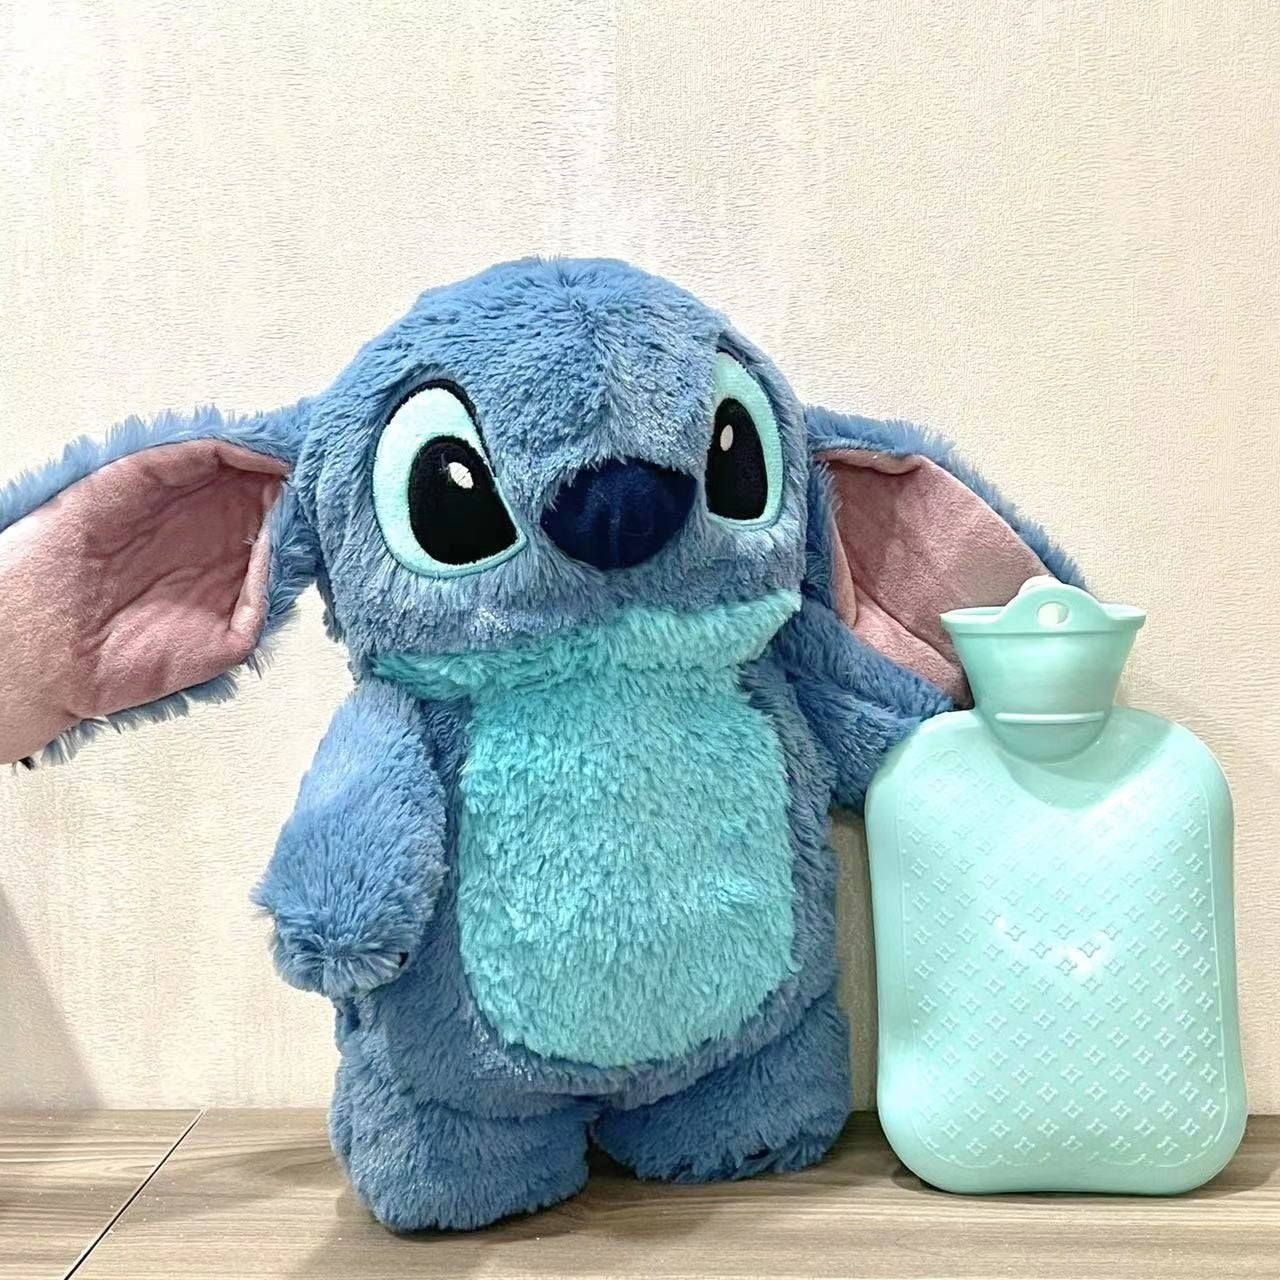 Stitch Disney hot water bottle – PeluchMania